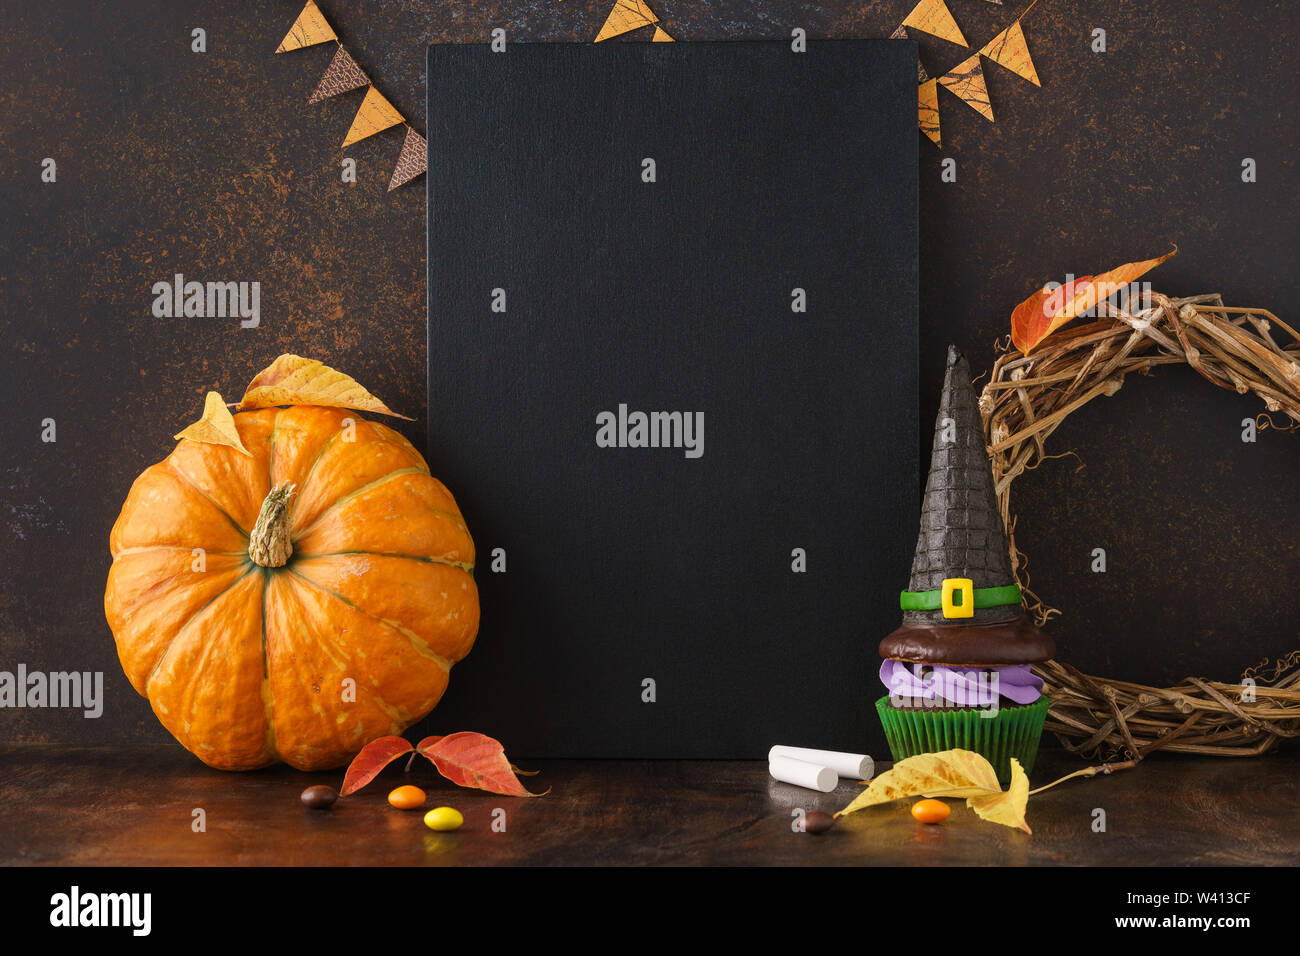 Herbst festliche Tafel Hintergrund mit Kürbis, Blätter, und Halloween Festlichkeiten - Süßigkeiten und Hexenhut Cupcake. Halloween Verkauf mockup mit Copyspace. Stockfoto